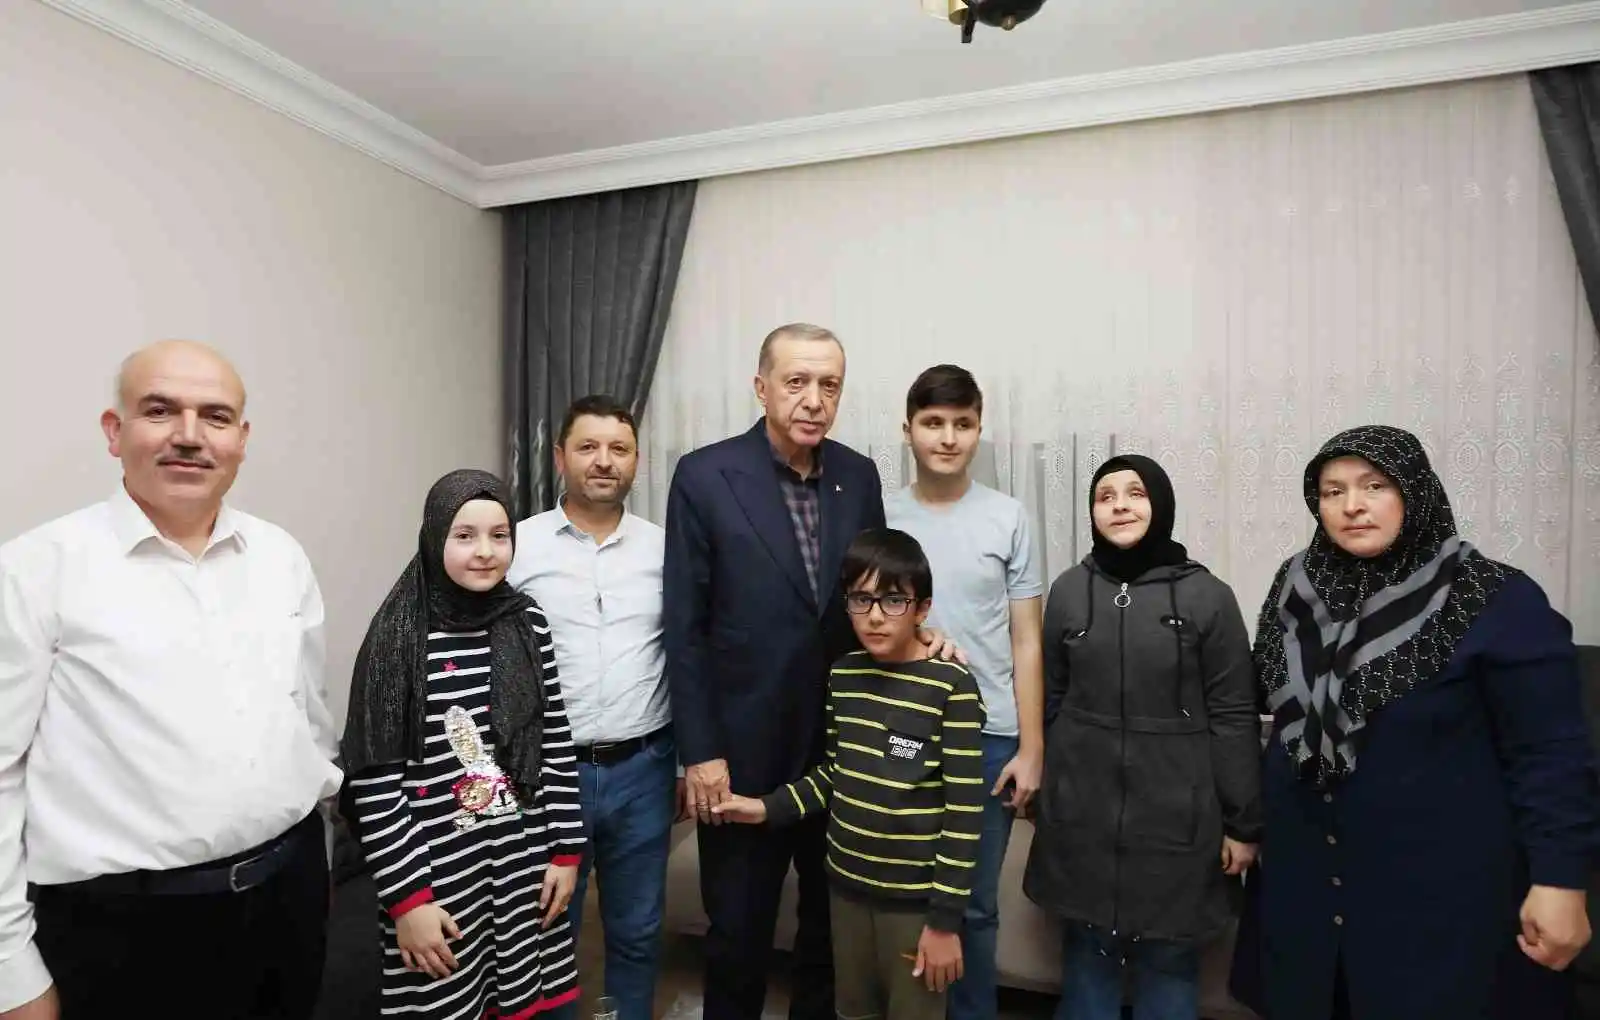 Cumhurbaşkanı Erdoğan, görme engelli hafız Ravzanur'u evinde ziyaret edip çay içti
